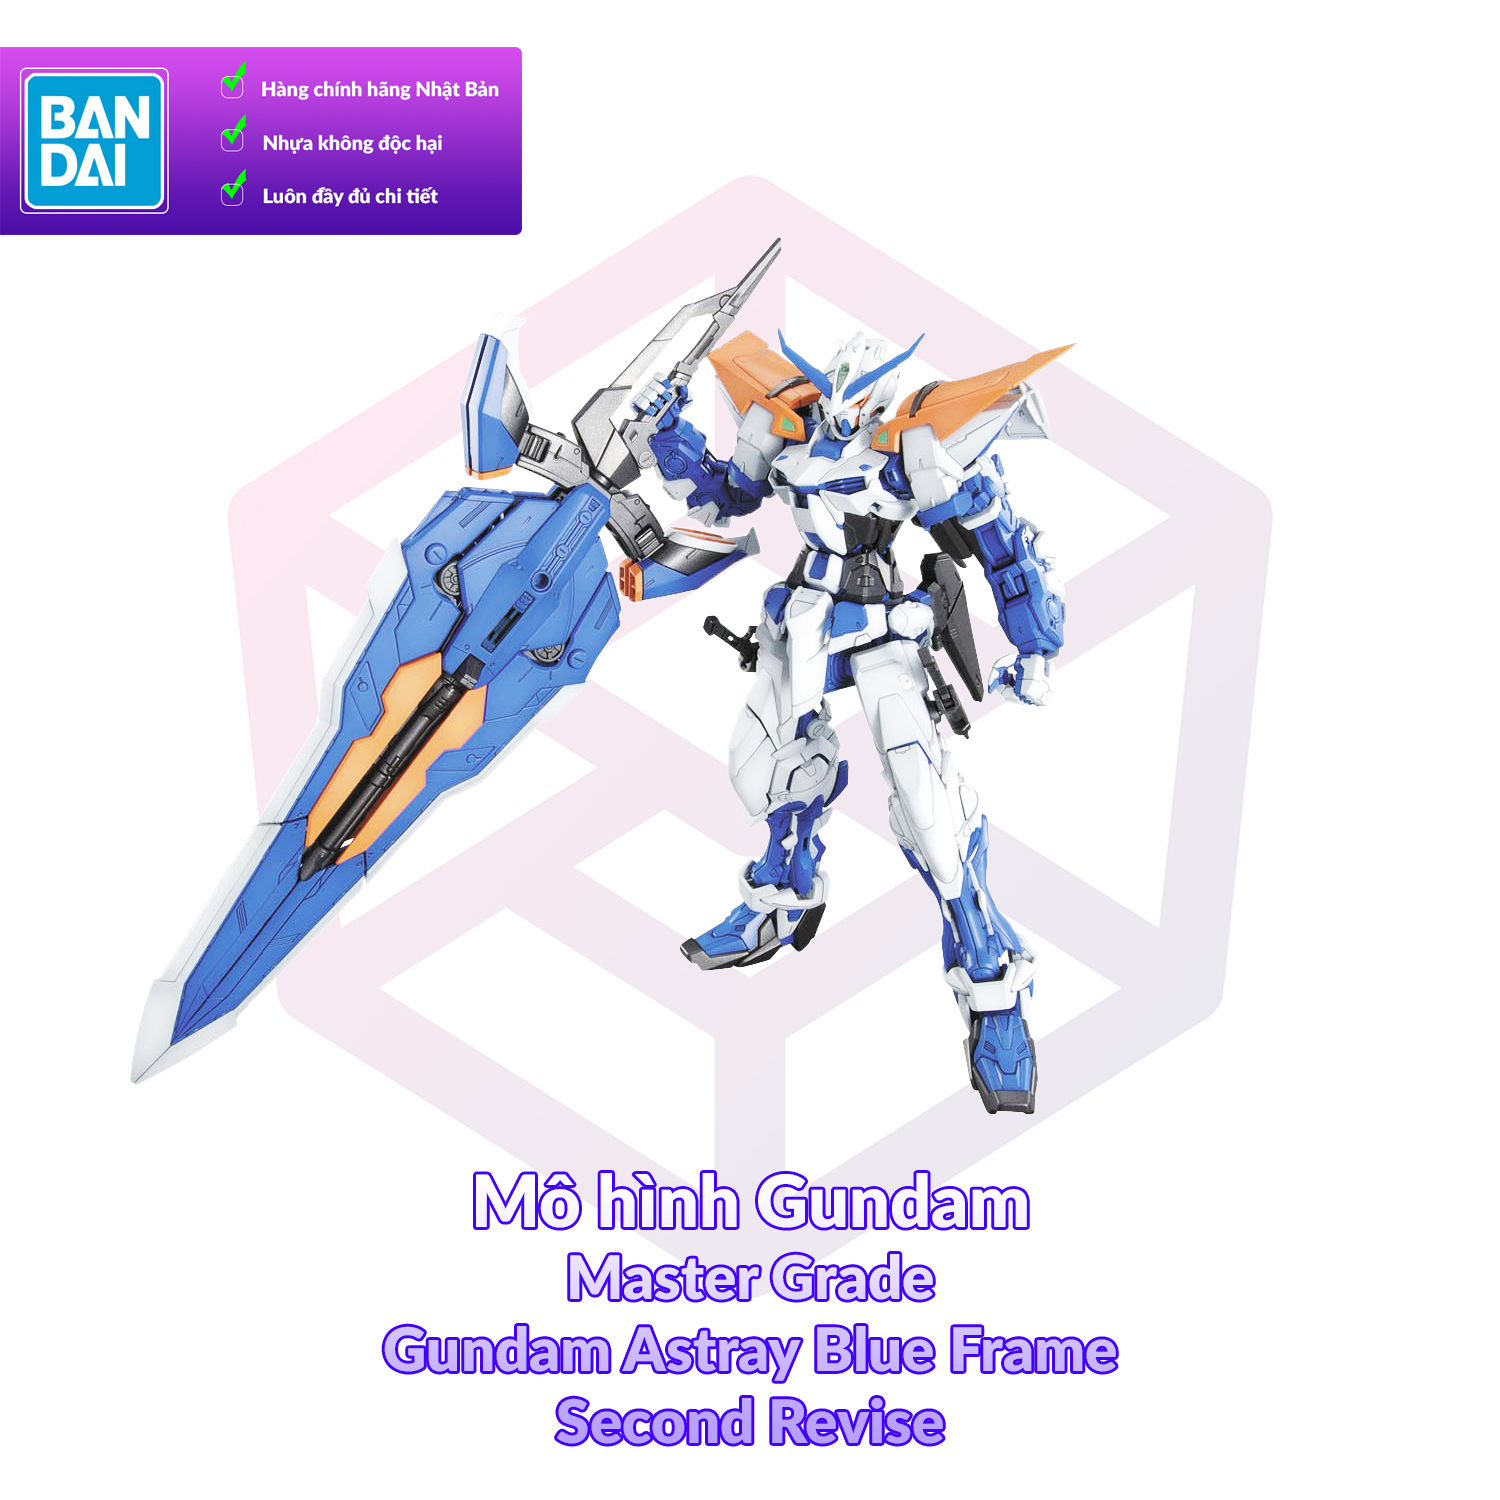 [7-11/12 VOUCHER 8%]Mô Hình Gundam Bandai MG Gundam Astray Blue Frame Second Revise 1/100 SEED vs Astray [GDB] [BMG]